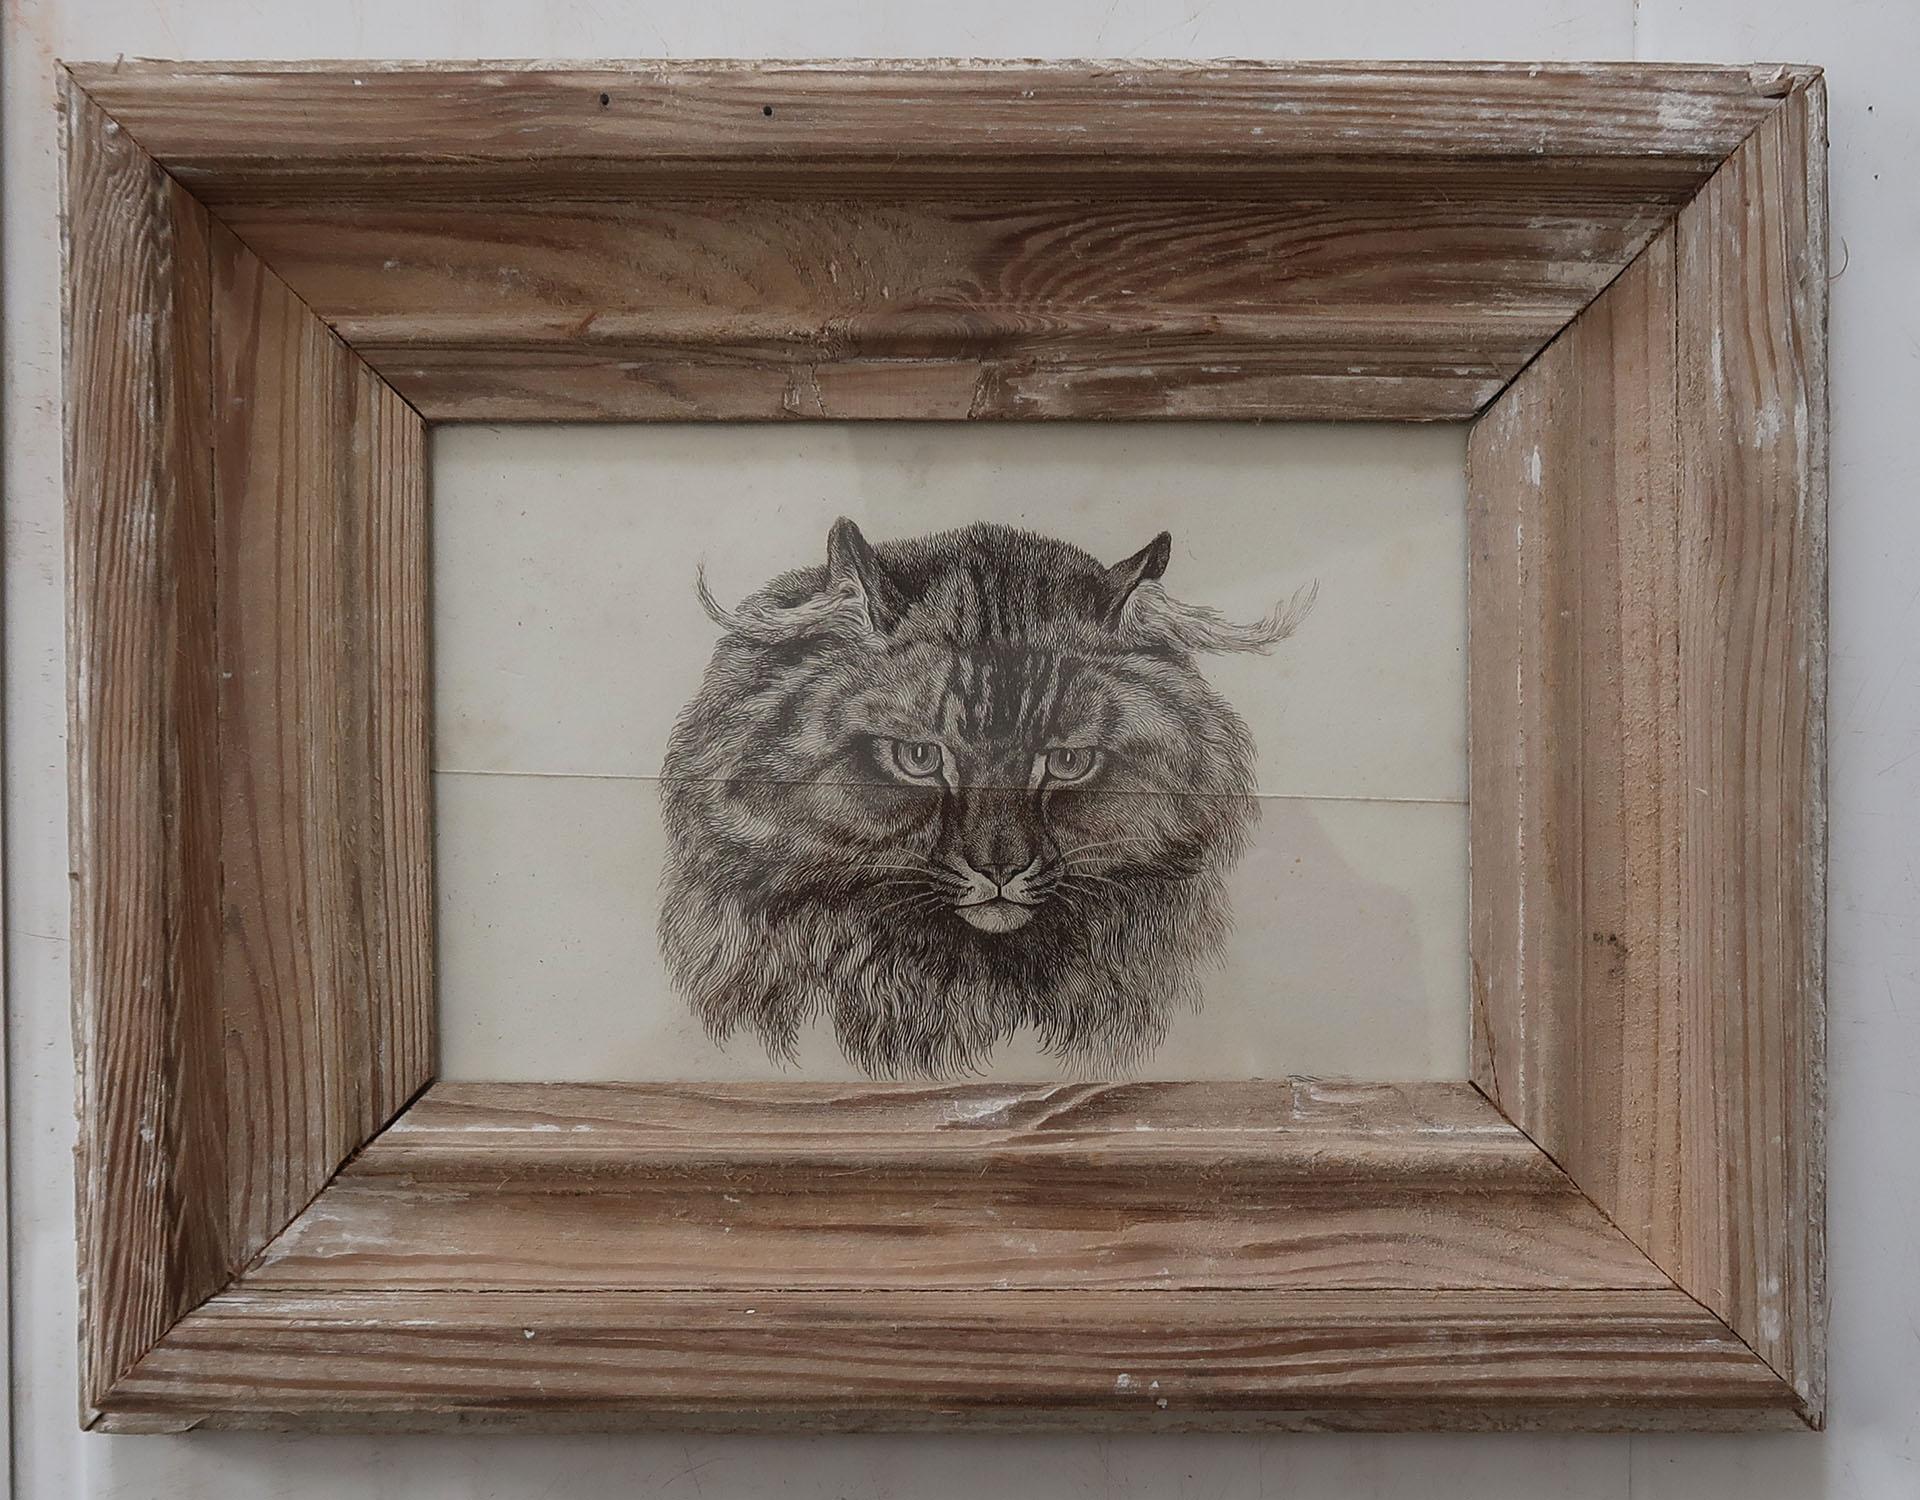 Superbe image d'un chat présentée dans un cadre ancien en pin vieilli

Gravure sur cuivre d'après Landseer

Publié vers 1840

Il y a un seul pli horizontal au centre de l'impression

La mesure ci-dessous correspond à la taille du